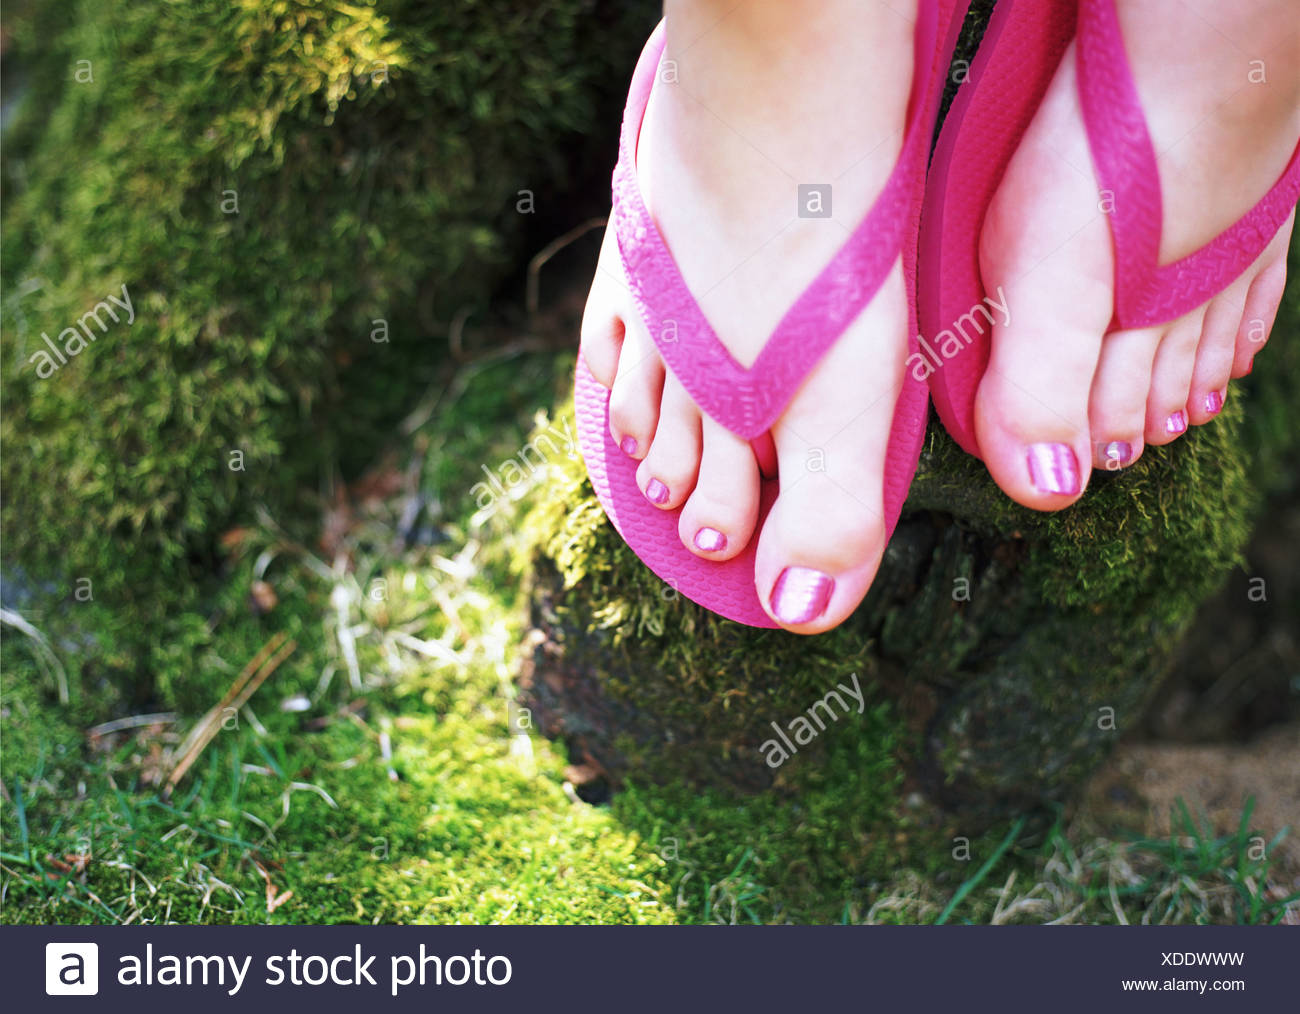 women's pink flip flops